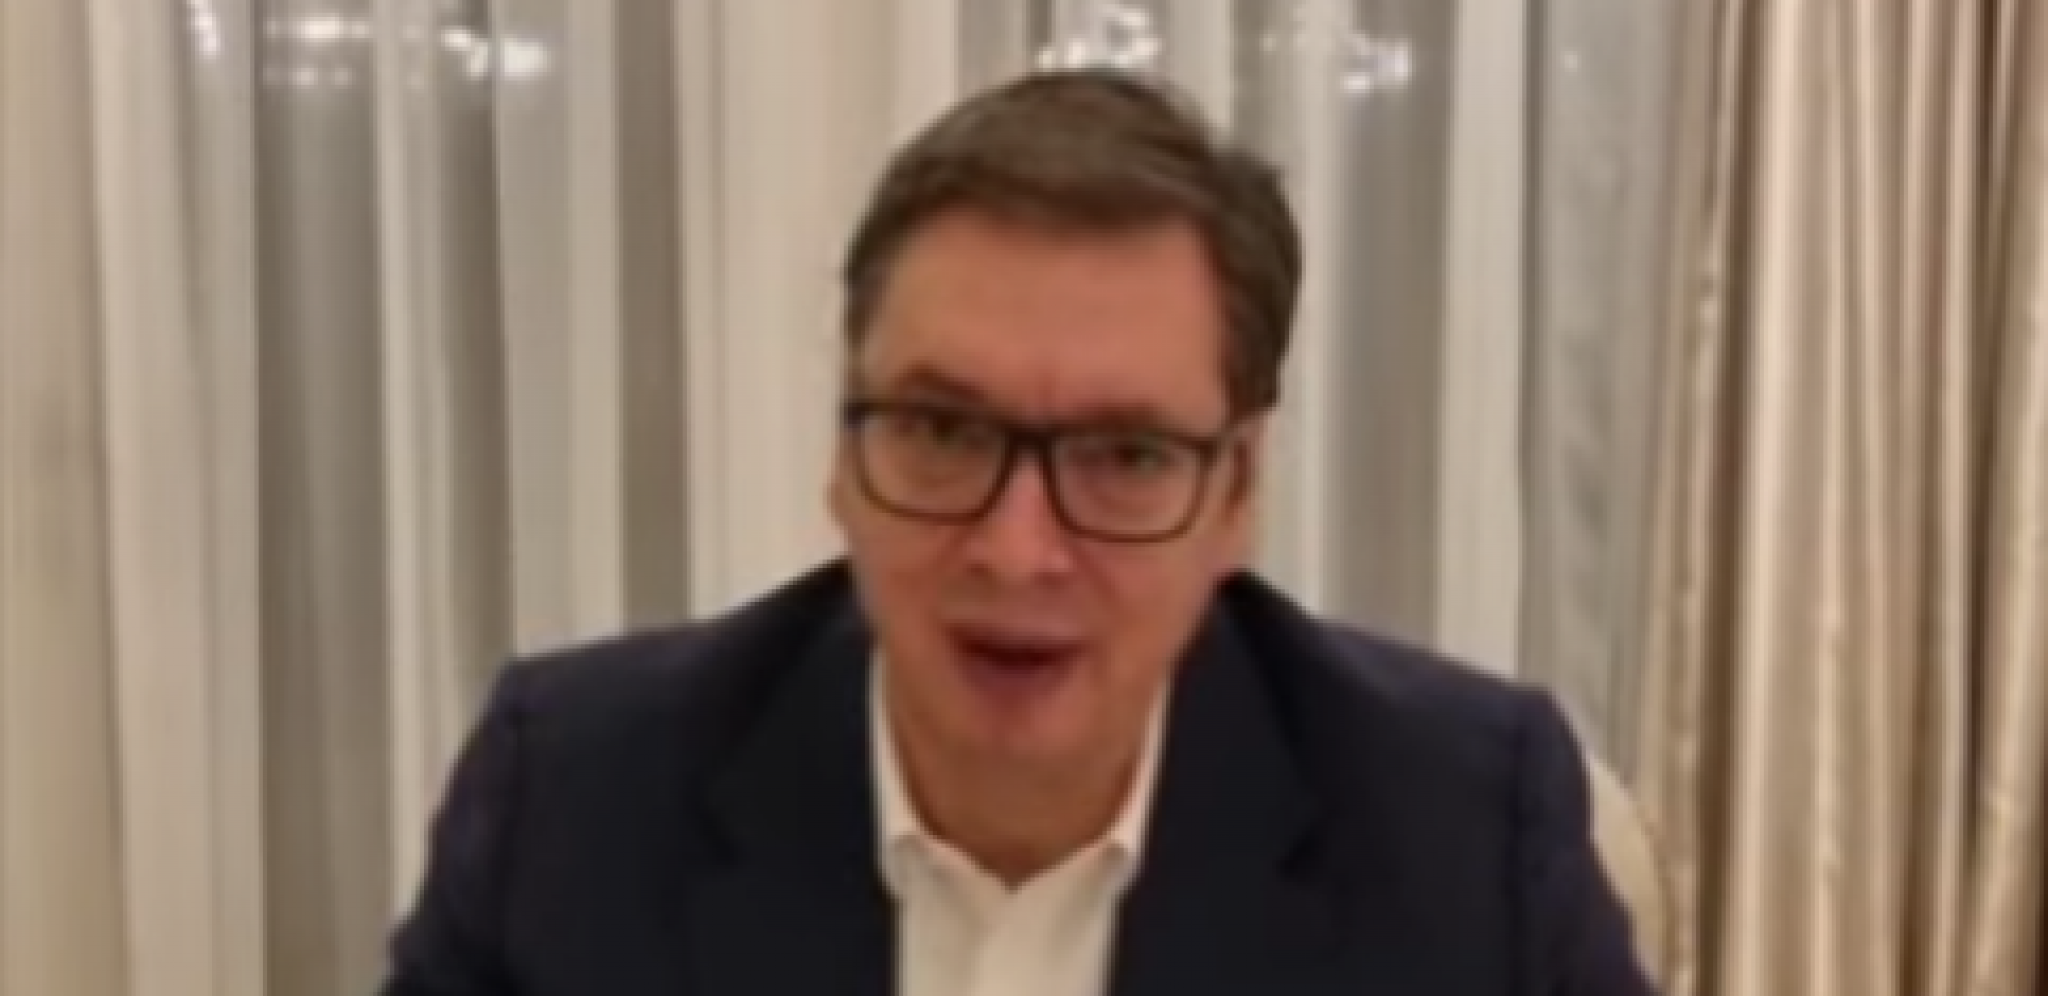 "MEĐUSOBNO PRIZNANJE, SANJAJTE!" Predsednik Vučić odgovorio na laži Rade Trajković, pa poslao bitnu poruku za građane (VIDEO)